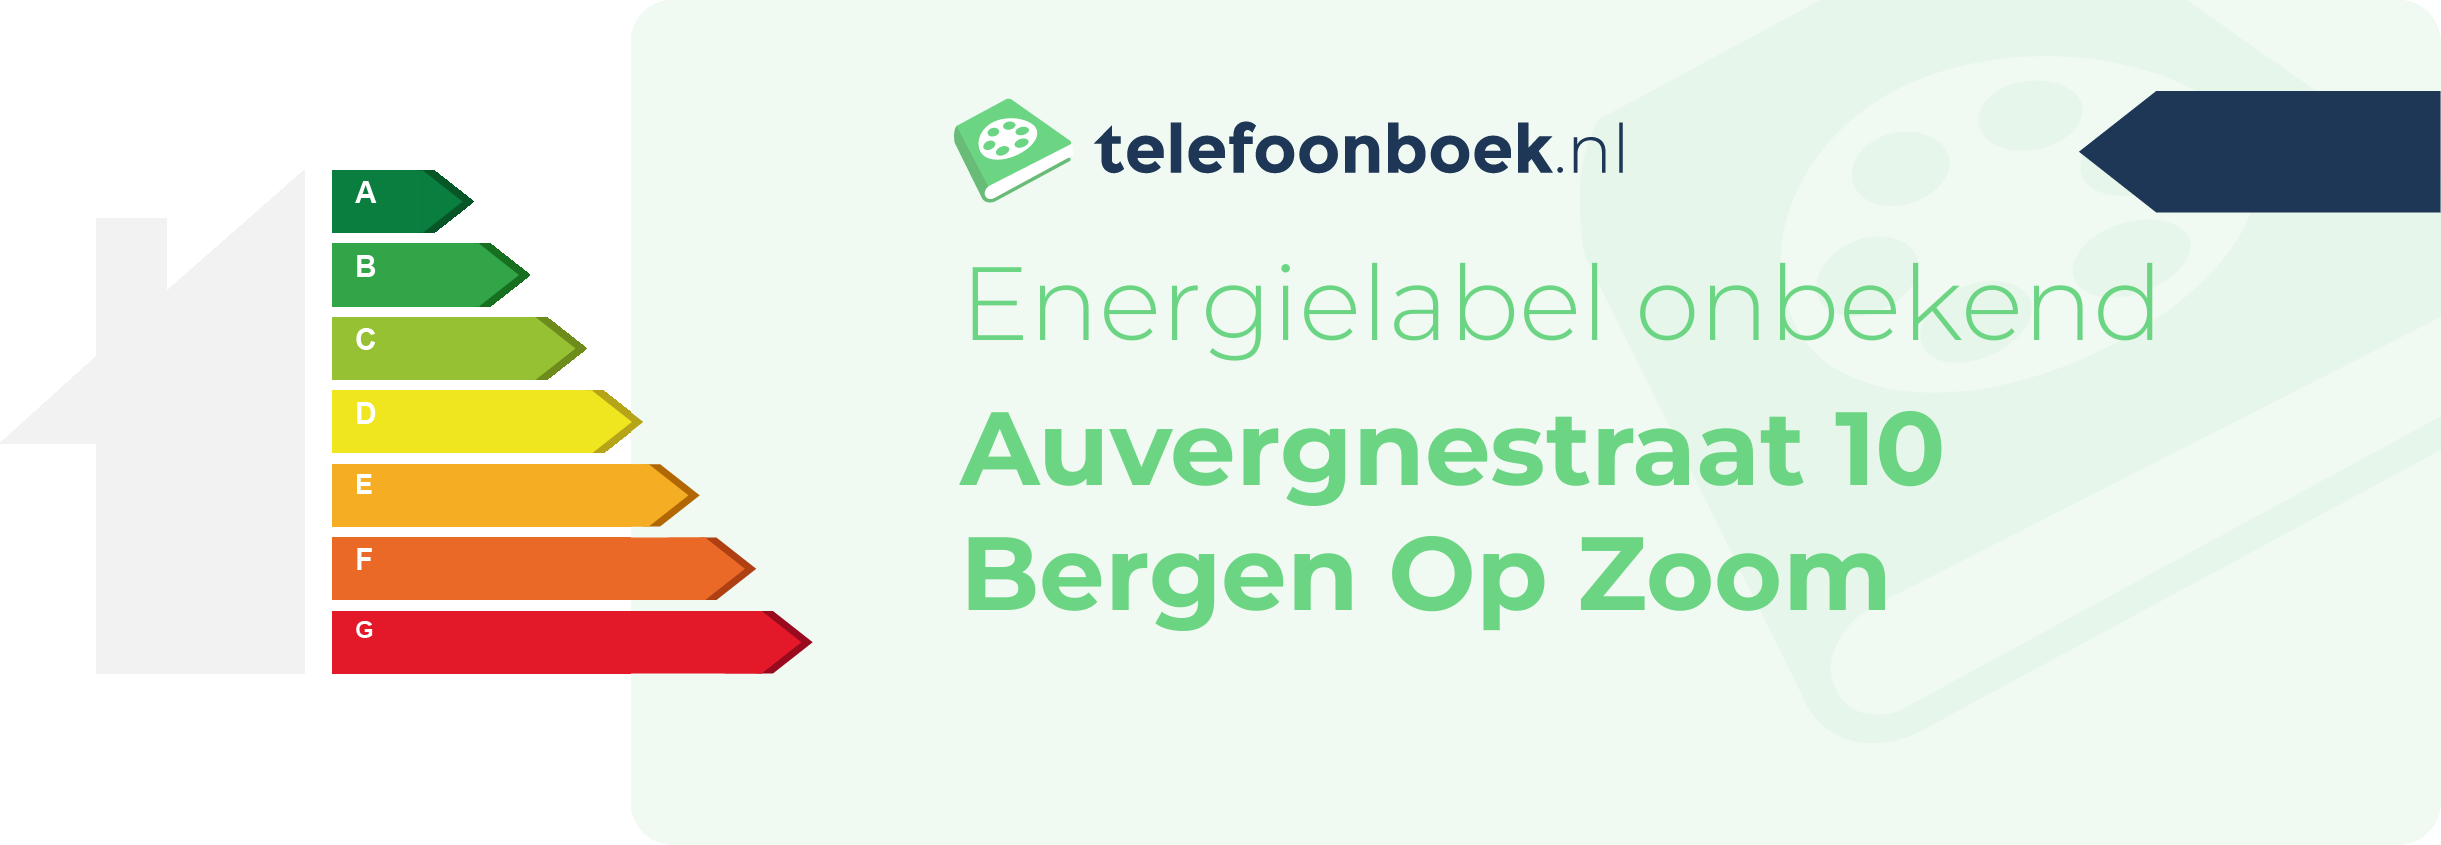 Energielabel Auvergnestraat 10 Bergen Op Zoom